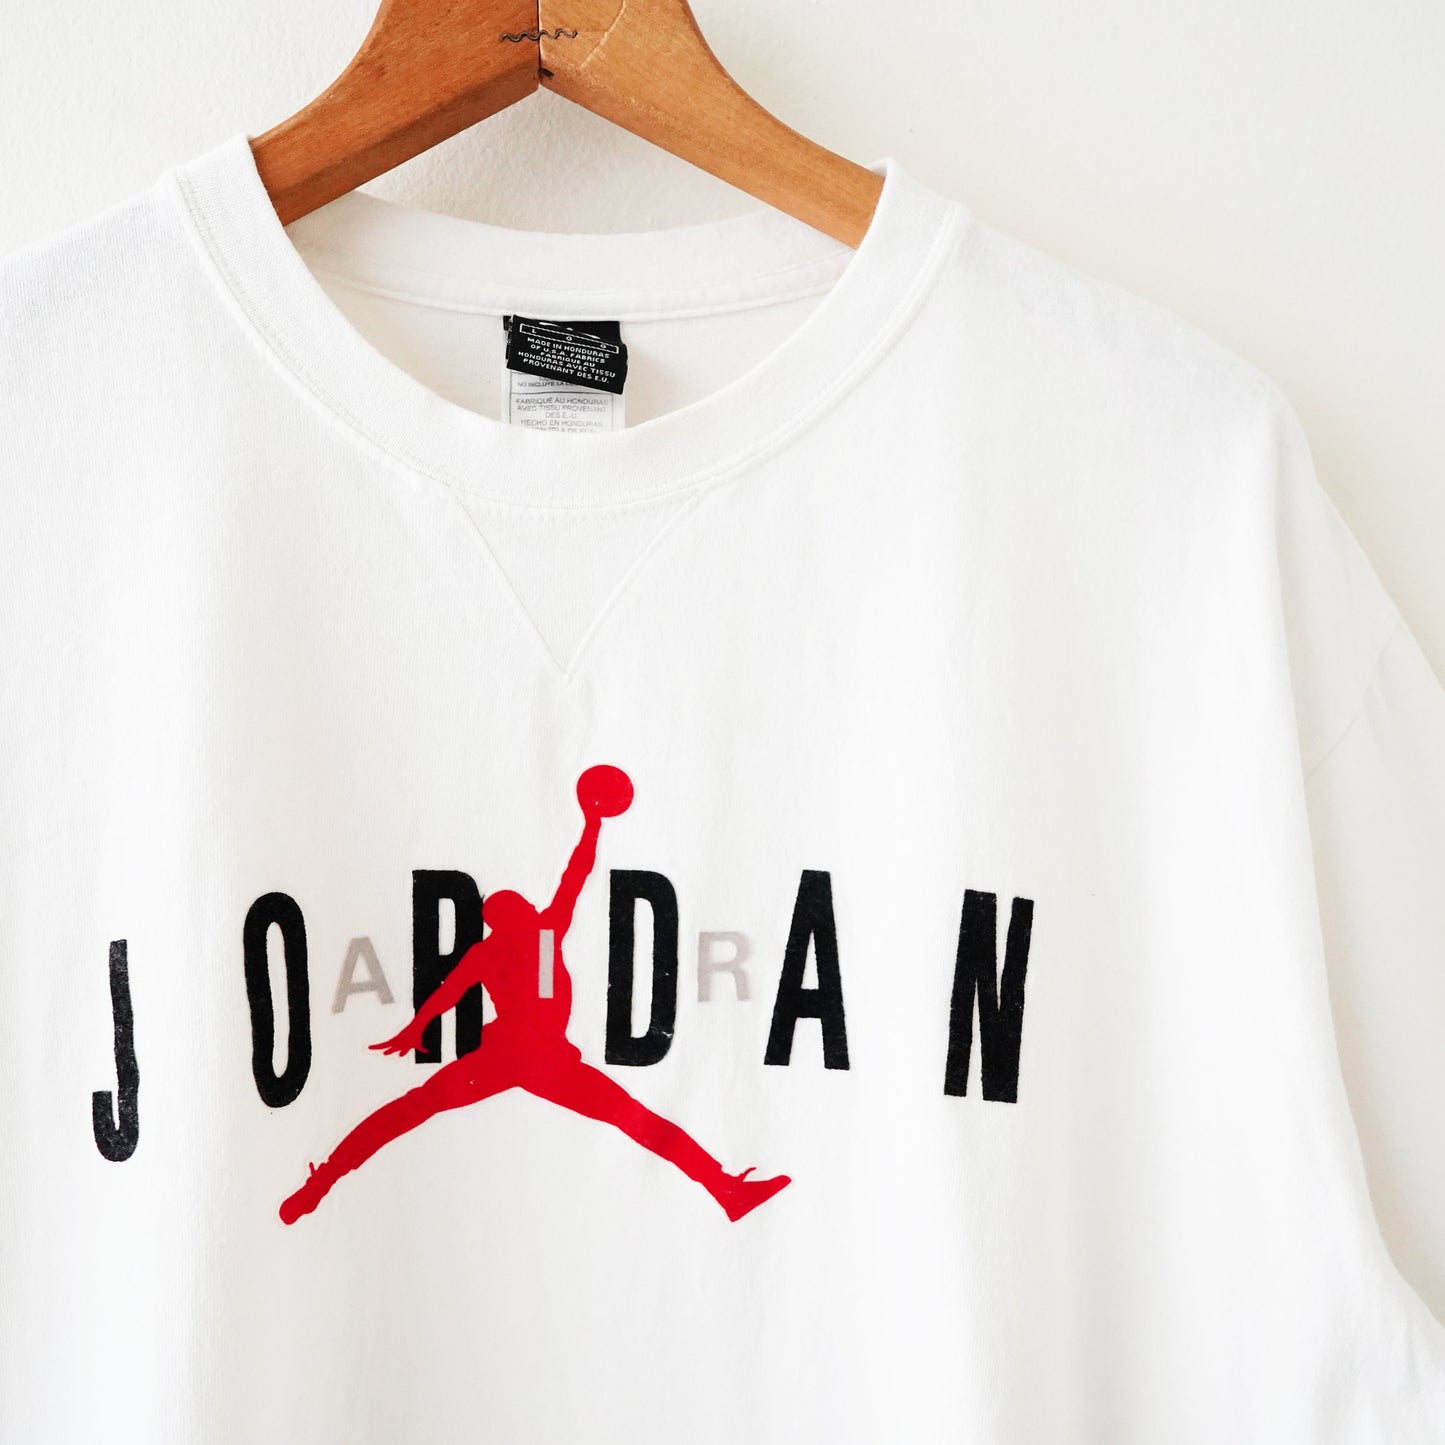 Jordan tee